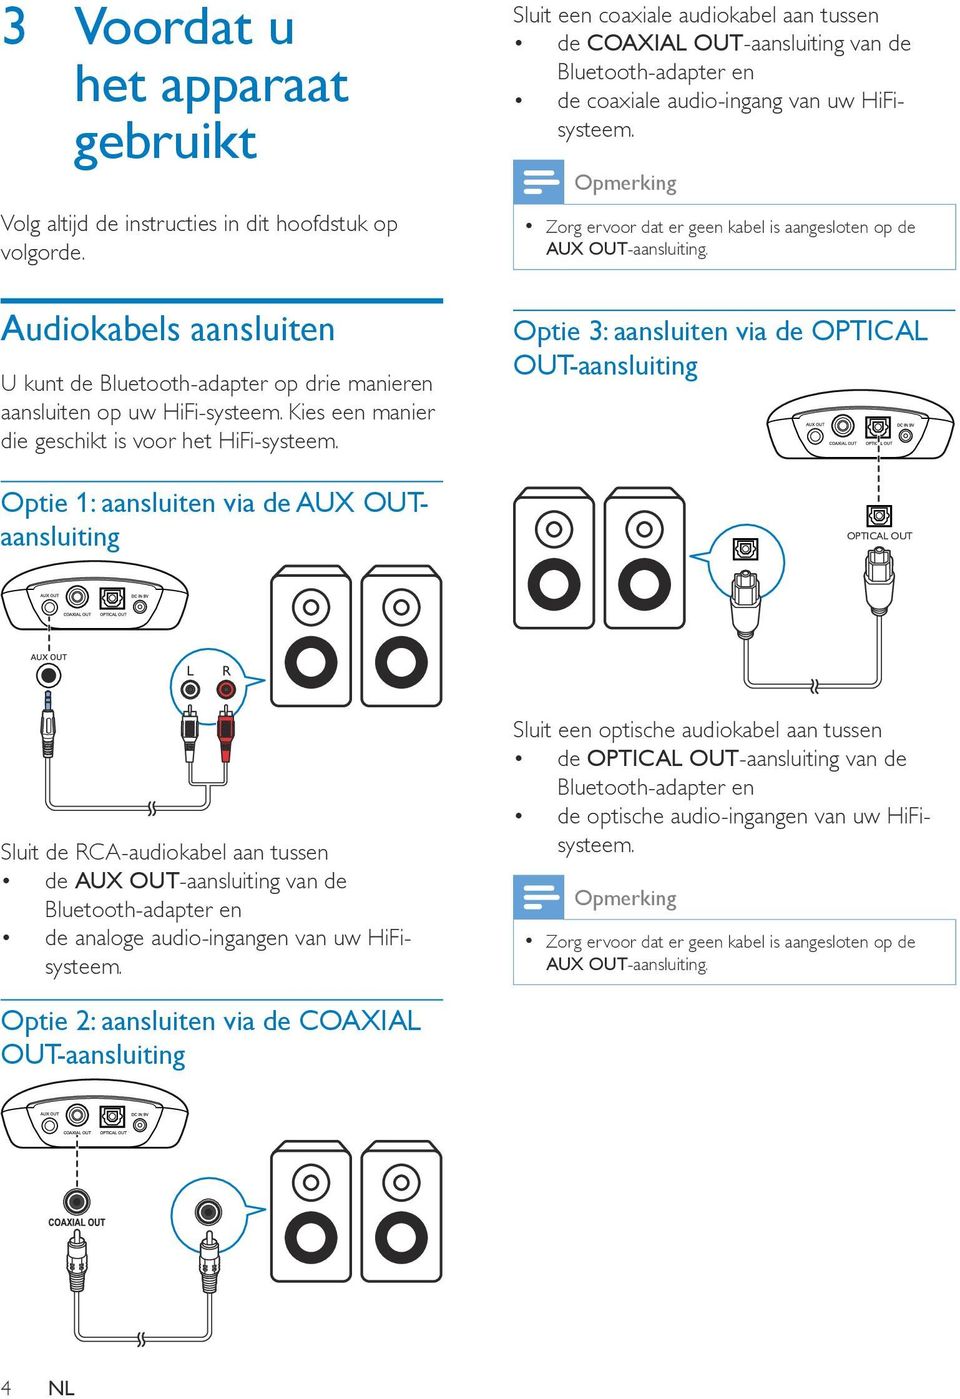 Optie 1: aansluiten via de AUX OUTaansluiting Sluit een coaxiale audiokabel aan tussen de COAXIAL OUT-aansluiting van de Bluetooth-adapter en de coaxiale audio-ingang van uw HiFisysteem.